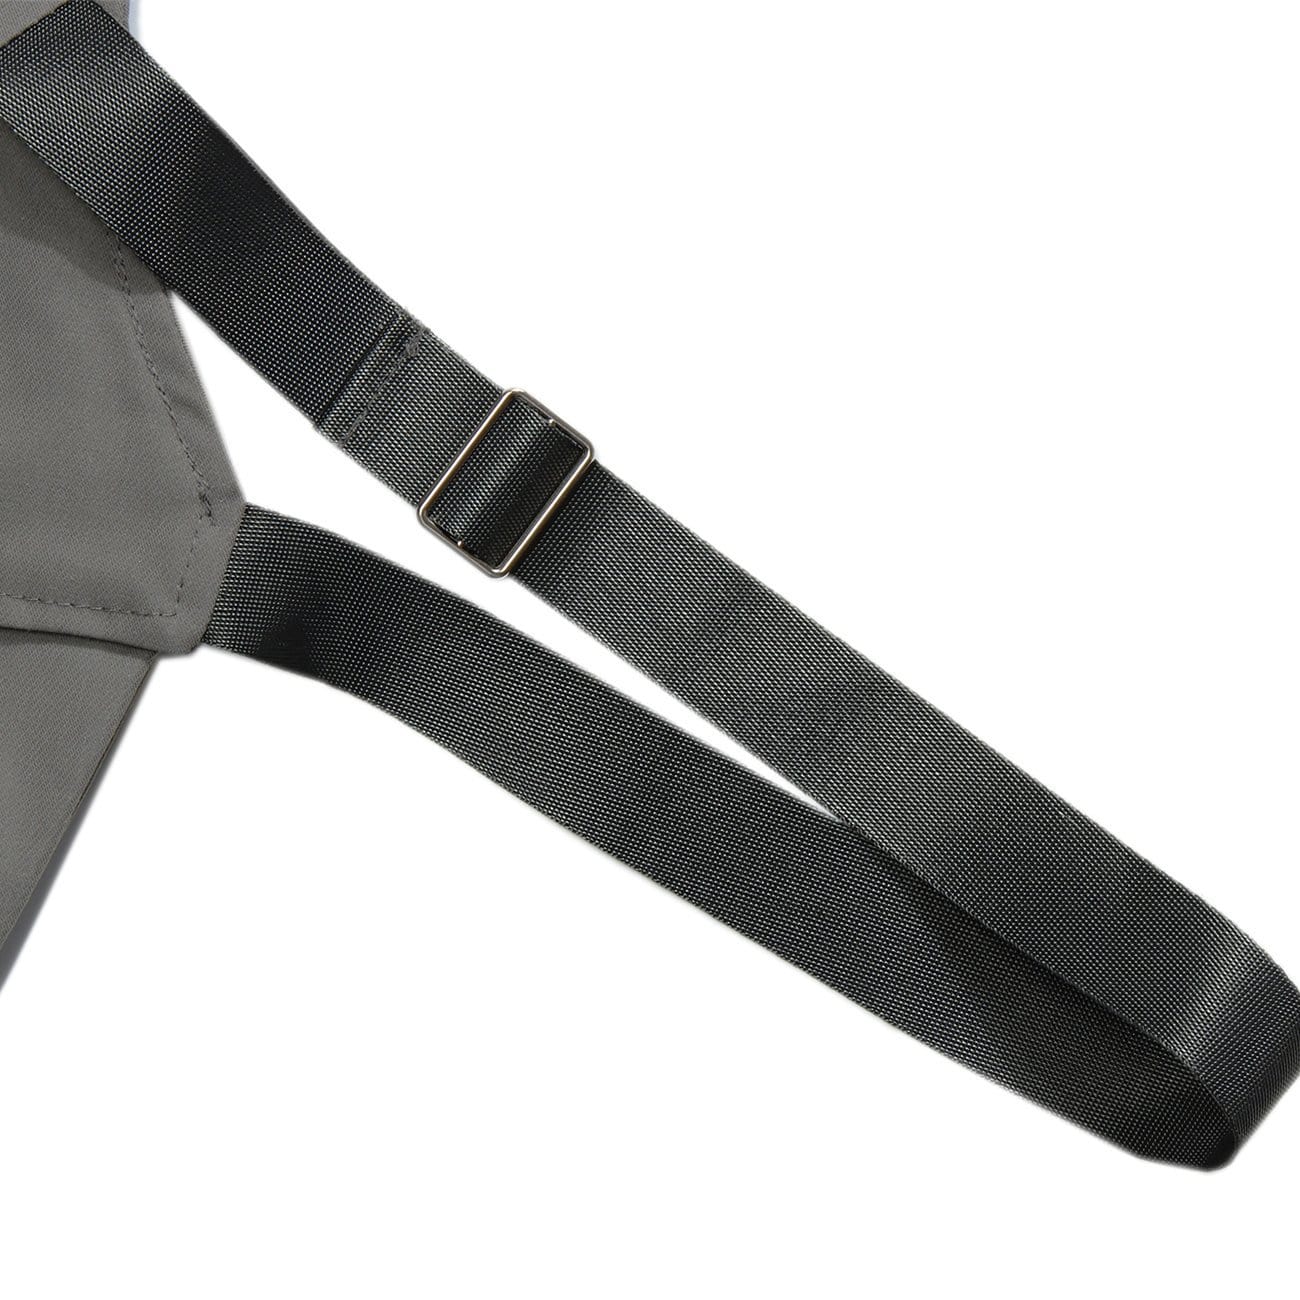 TO Function Metal Zipper Buckle Vest